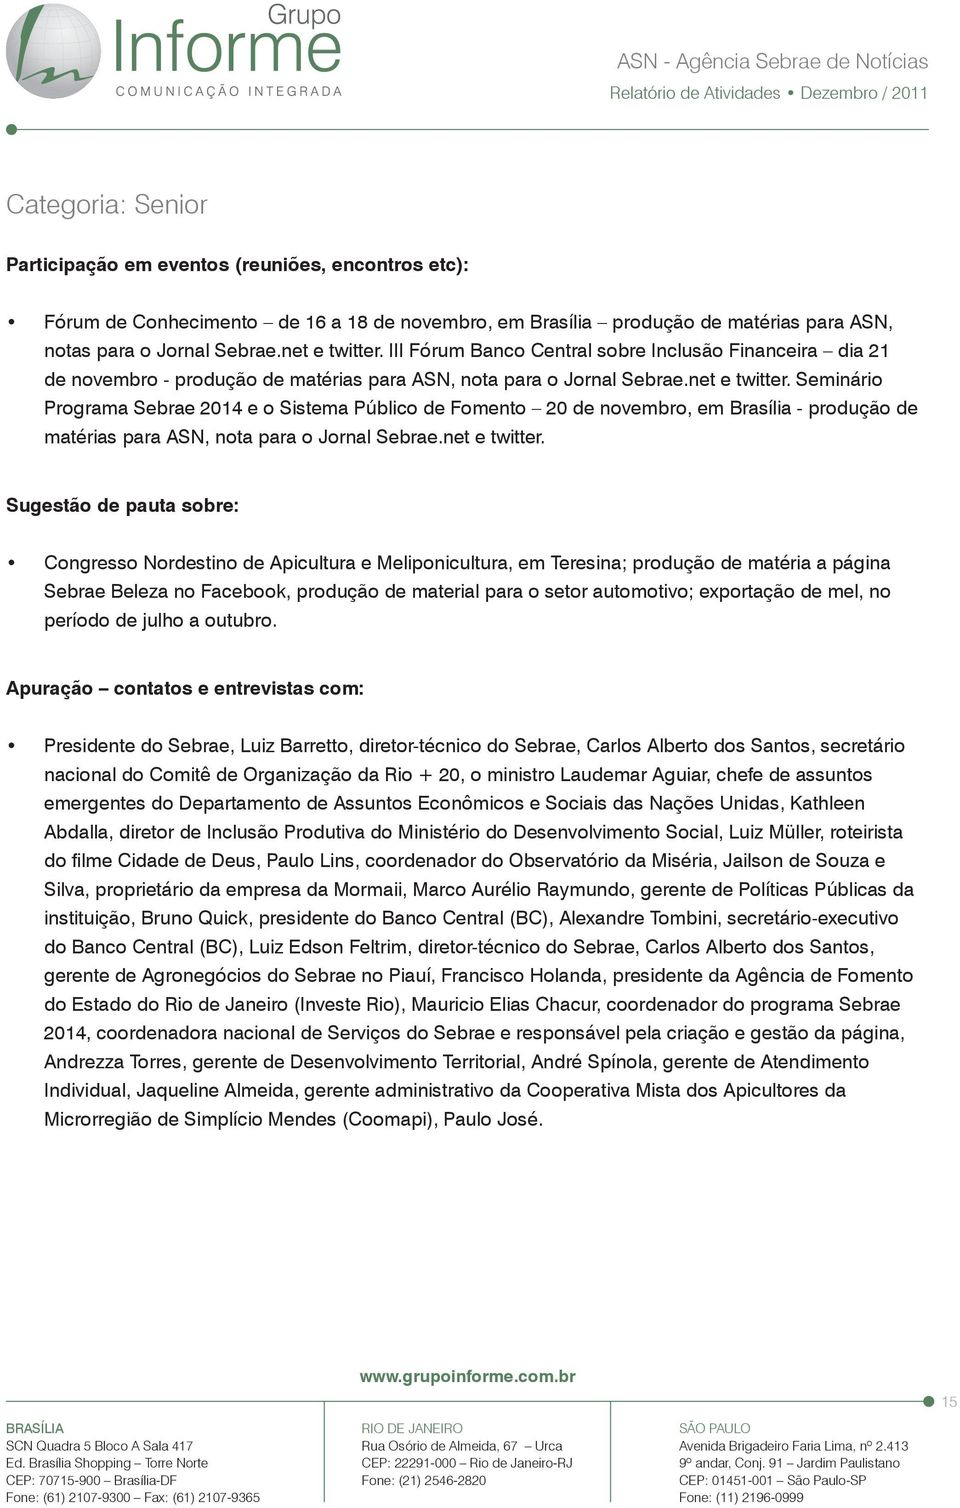 Seminário Programa Sebrae 2014 e o Sistema Público de Fomento 20 de novembro, em Brasília - produção de matérias para ASN, nota para o Jornal Sebrae.net e twitter.